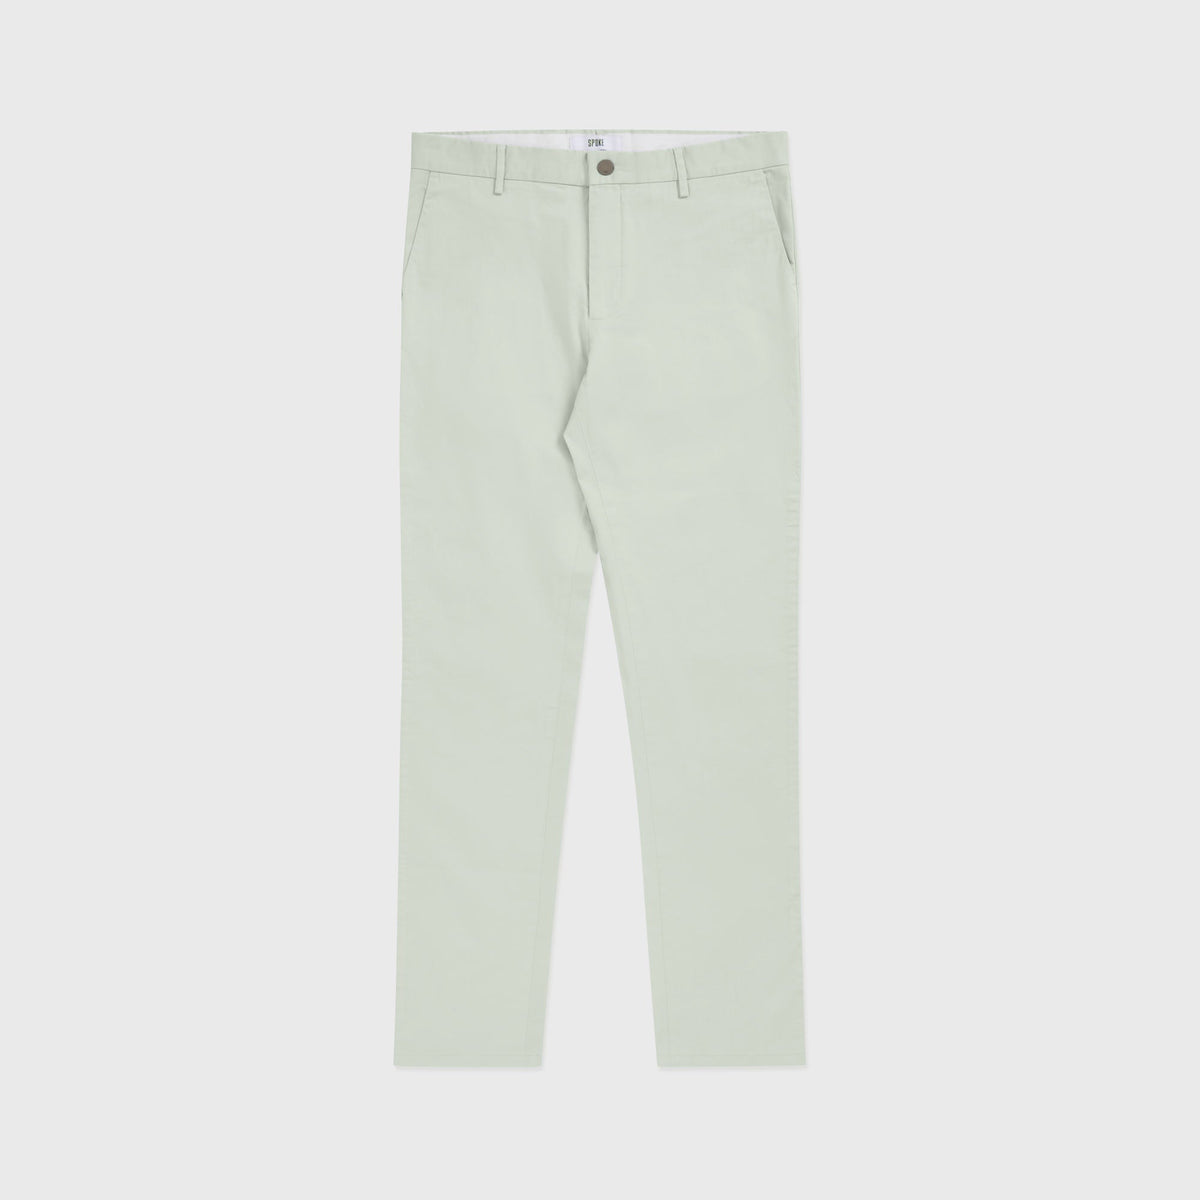 Aqua Grey Summer Sharps - Custom-Fit Cooling Men's Trousers - SPOKE - SPOKE